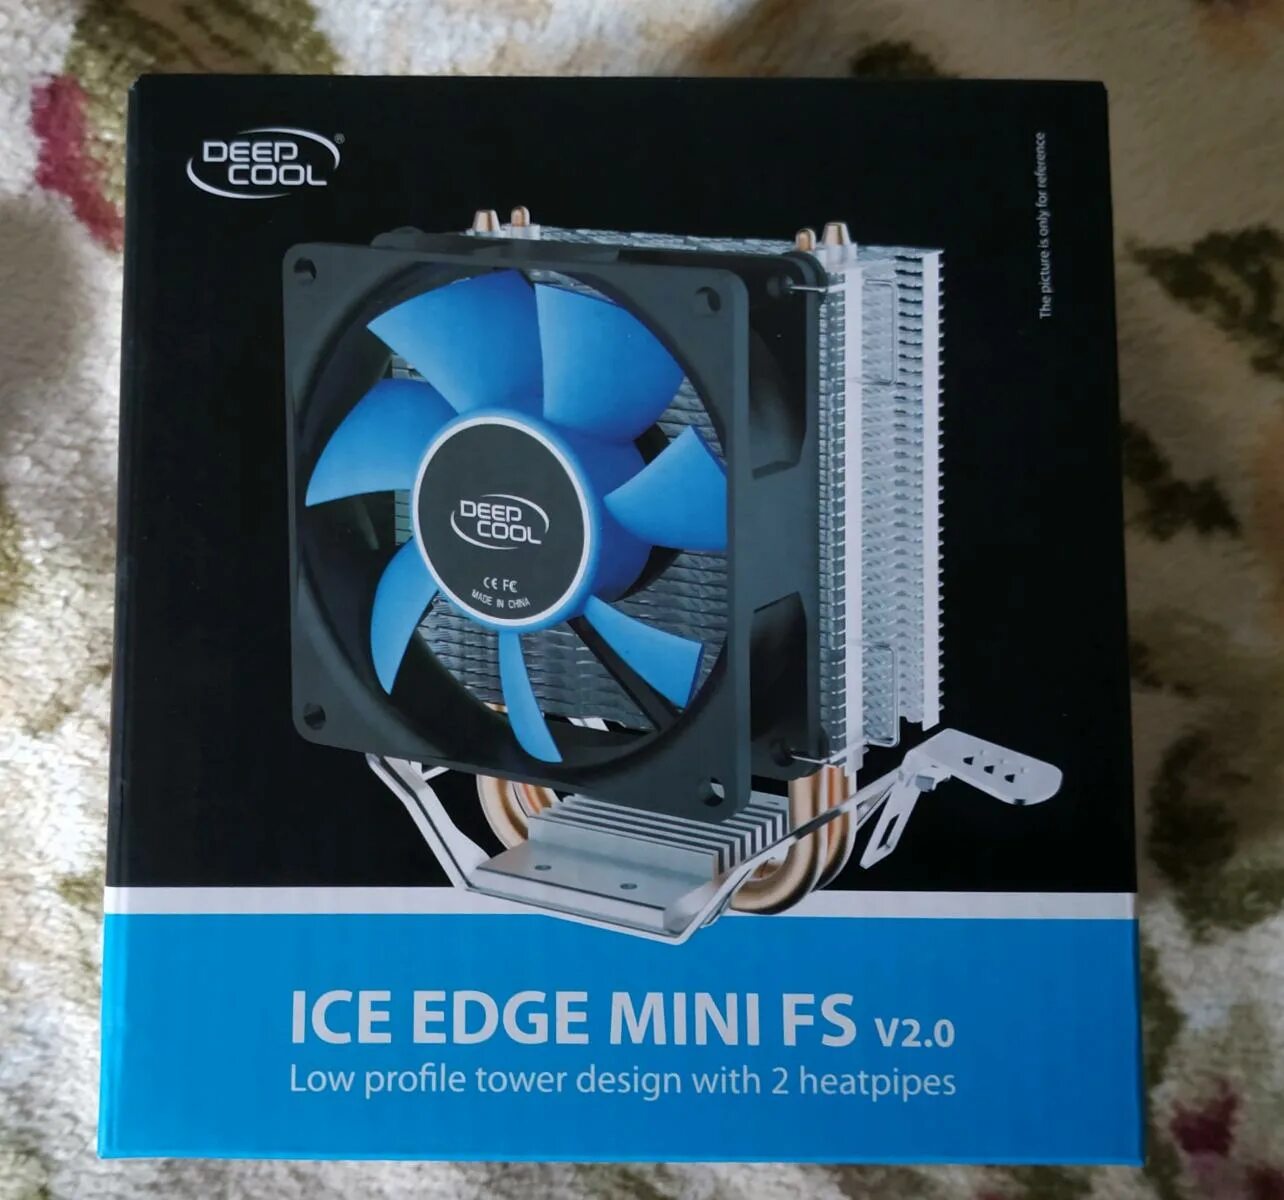 Deepcool ice edge mini v 2.0. Deepcool Ice Edge Mini FS V2.0. Deepcool Ice Edge Mini FS 2.0. Кулер Ice Edge Mini fs2. Deepcool Ice Edge Mini FS V2.0 25 манатов.